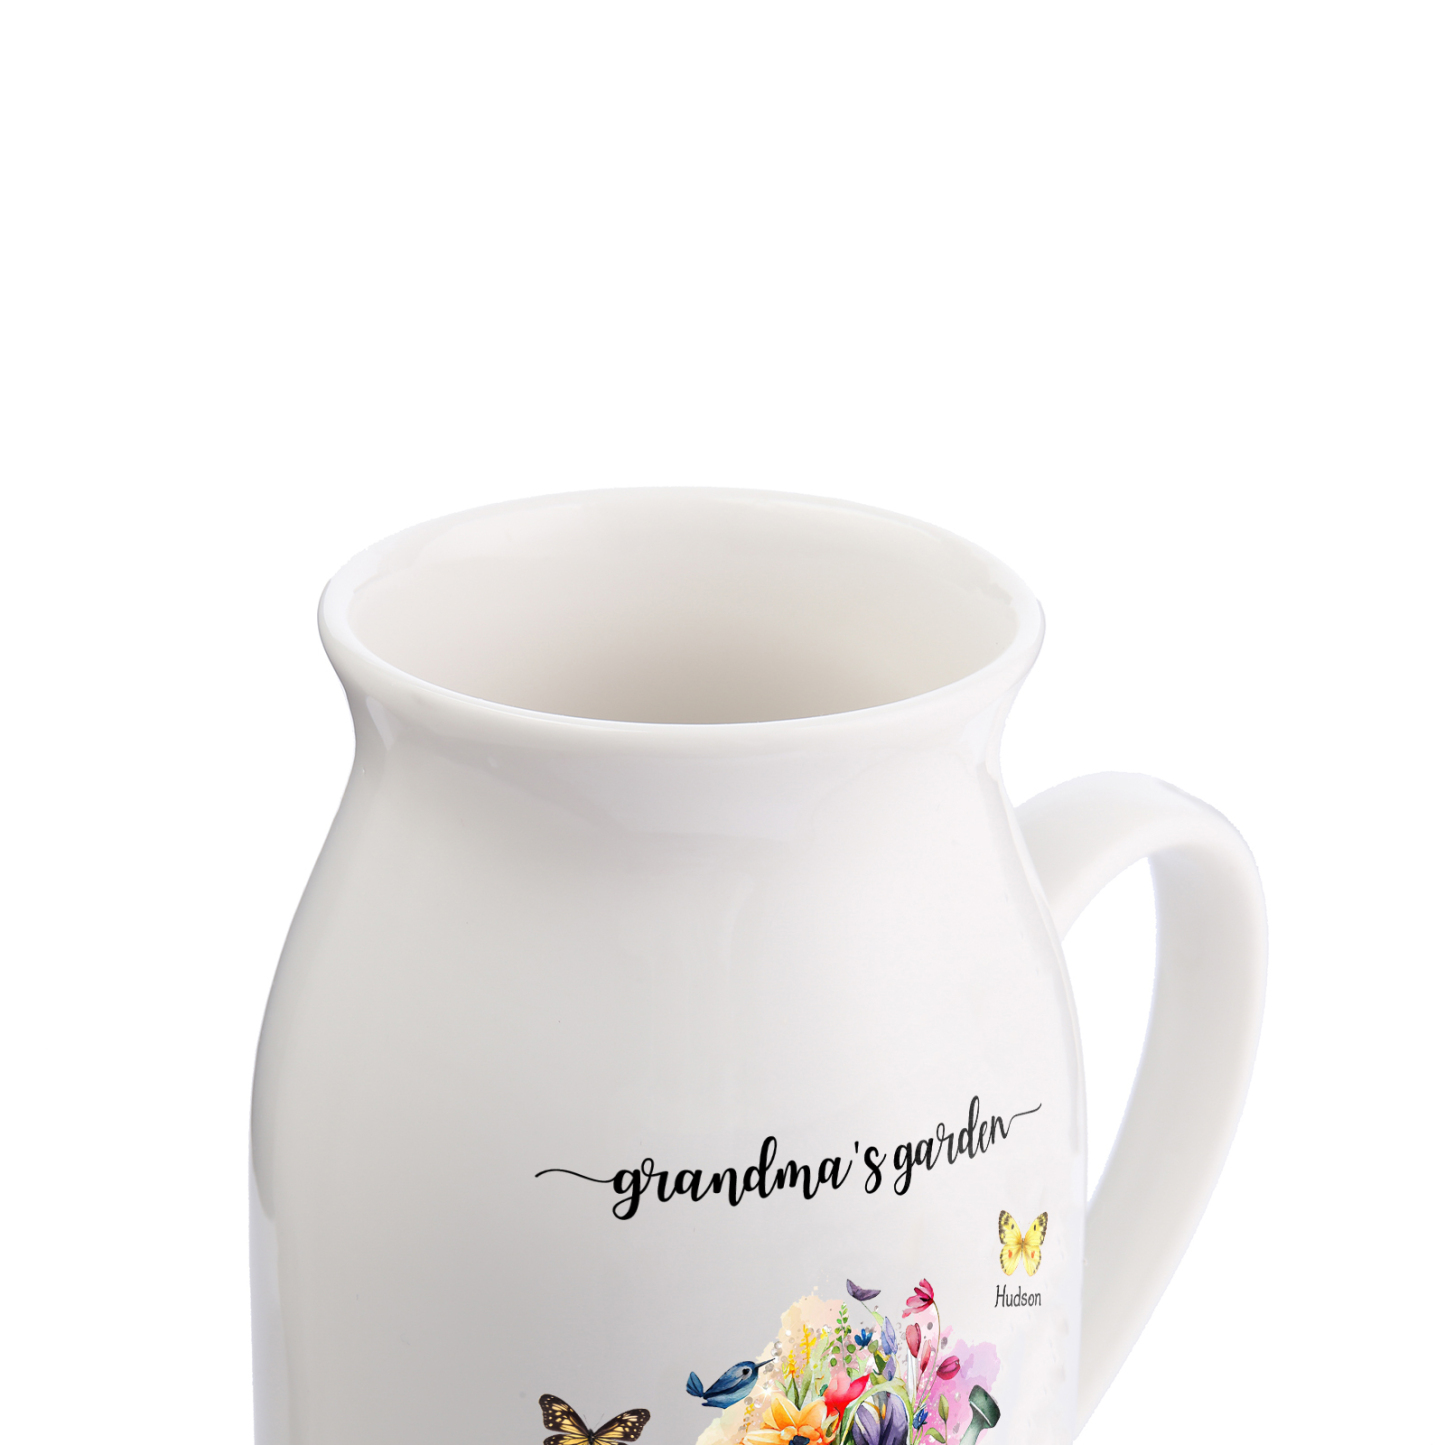 3 Names - Personalized Name "Grandma's Garden" Ceramic Vase as a Gift for Grandma